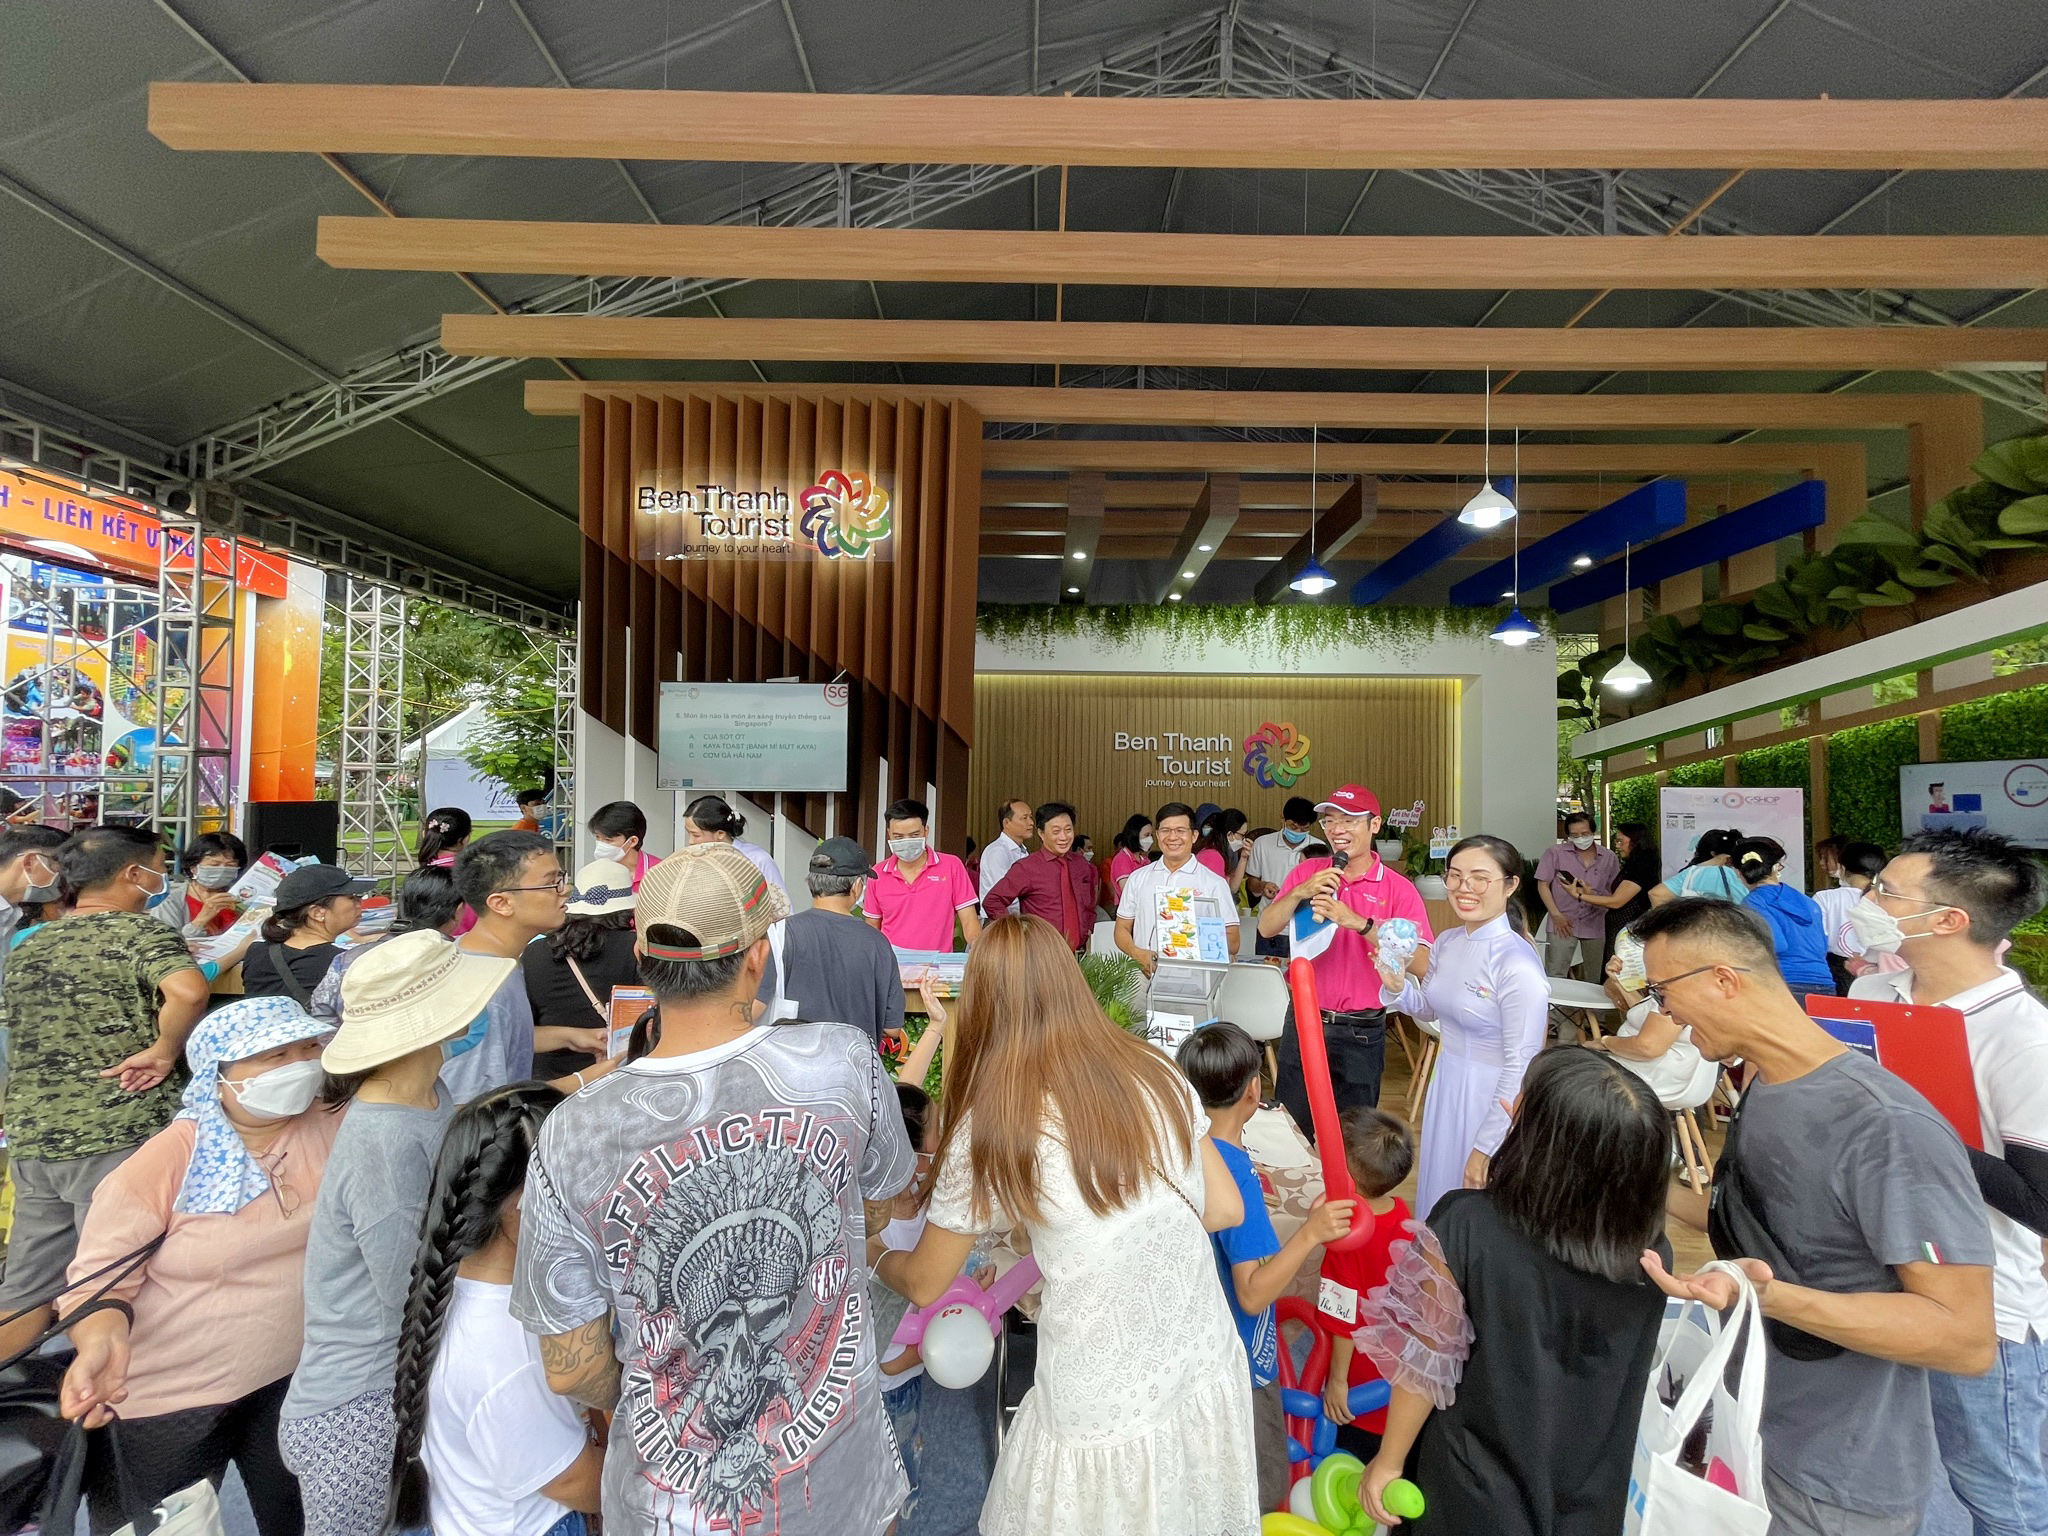 Xuyên suốt 3 ngày tham gia hội chợ ITE HCMC 2022, BenThanh Tourist sẽ thường xuyên tổ chức các hoạt động hoạt náo, tặng quà cho khách tham quan gian hàng